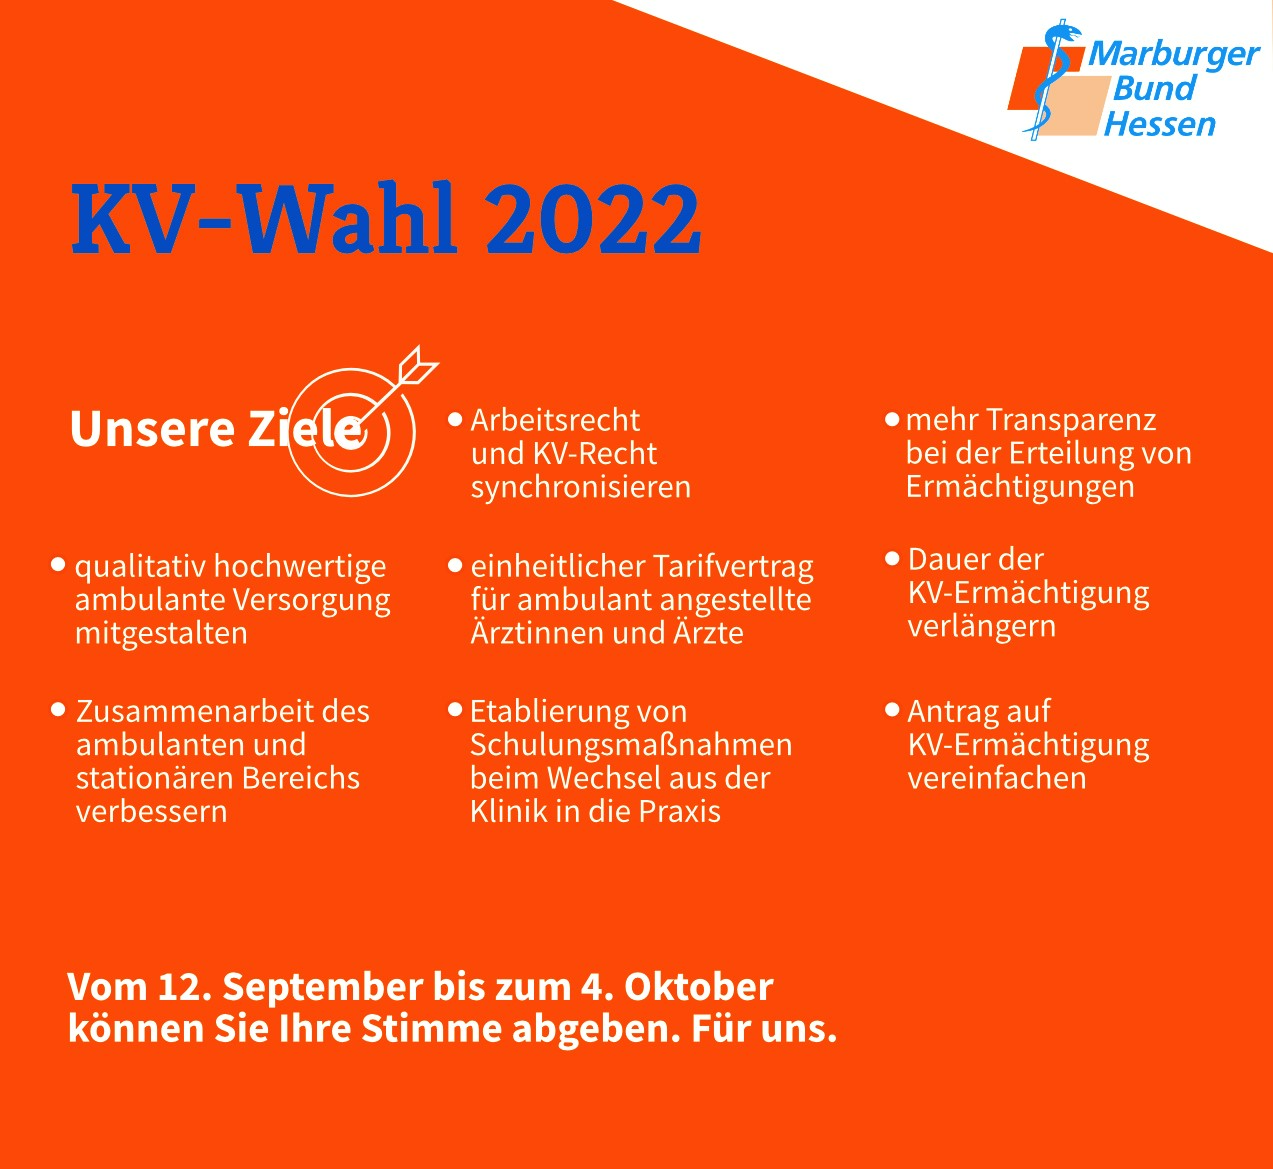 Unsere Ziele für die KV-Wahl 2022